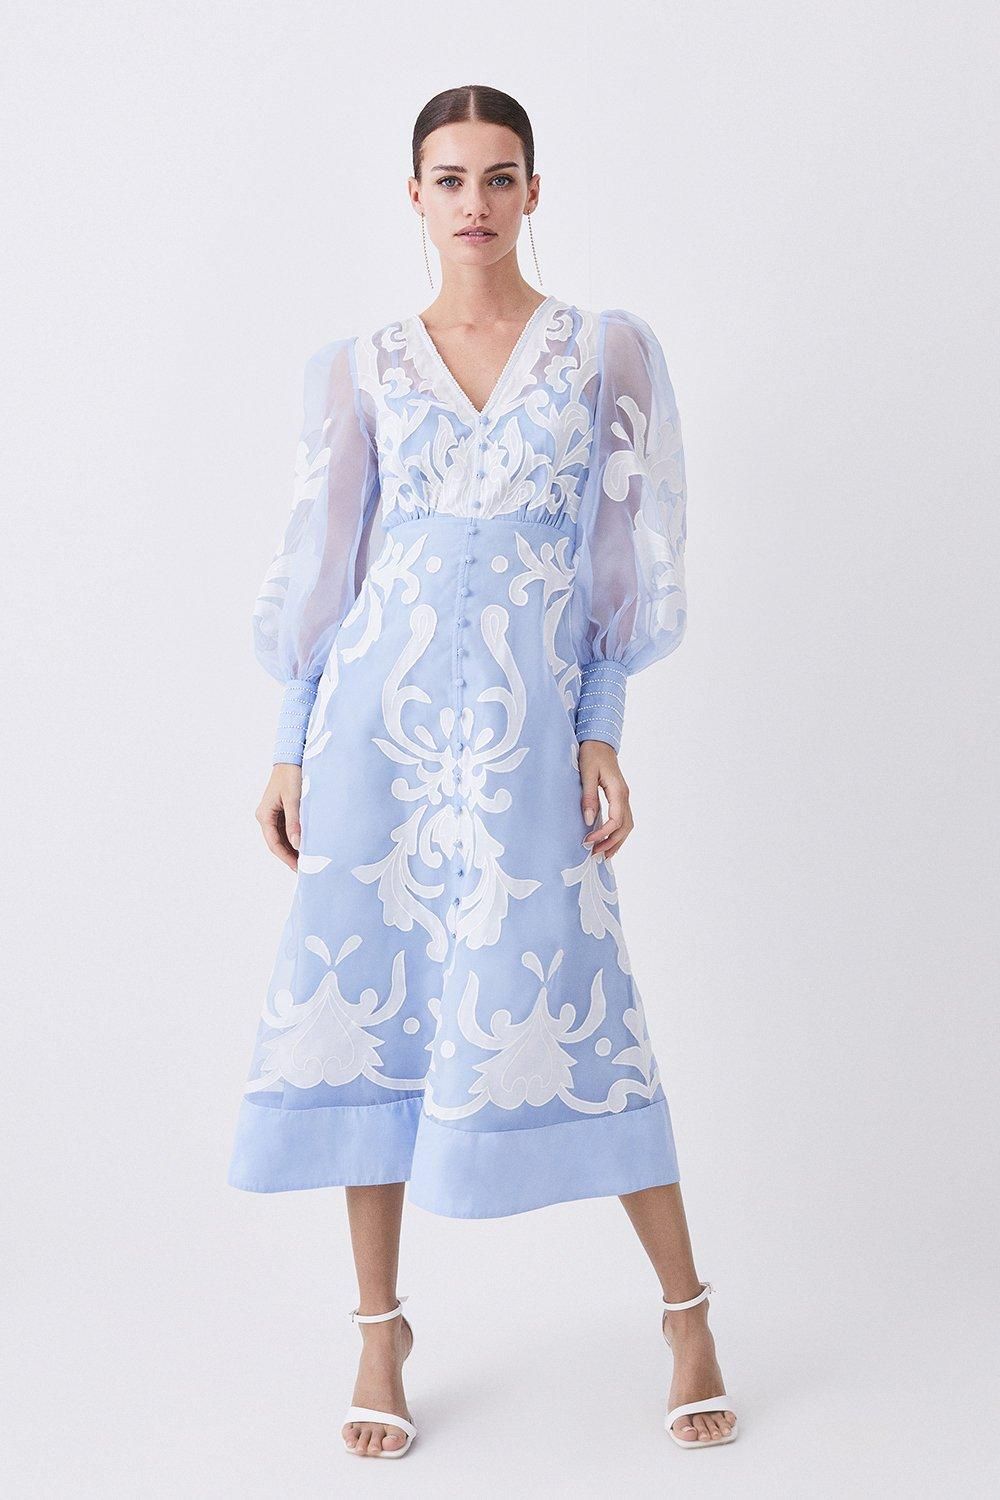 Applique Organdie Buttoned Woven Maxi Dress | Karen Millen US